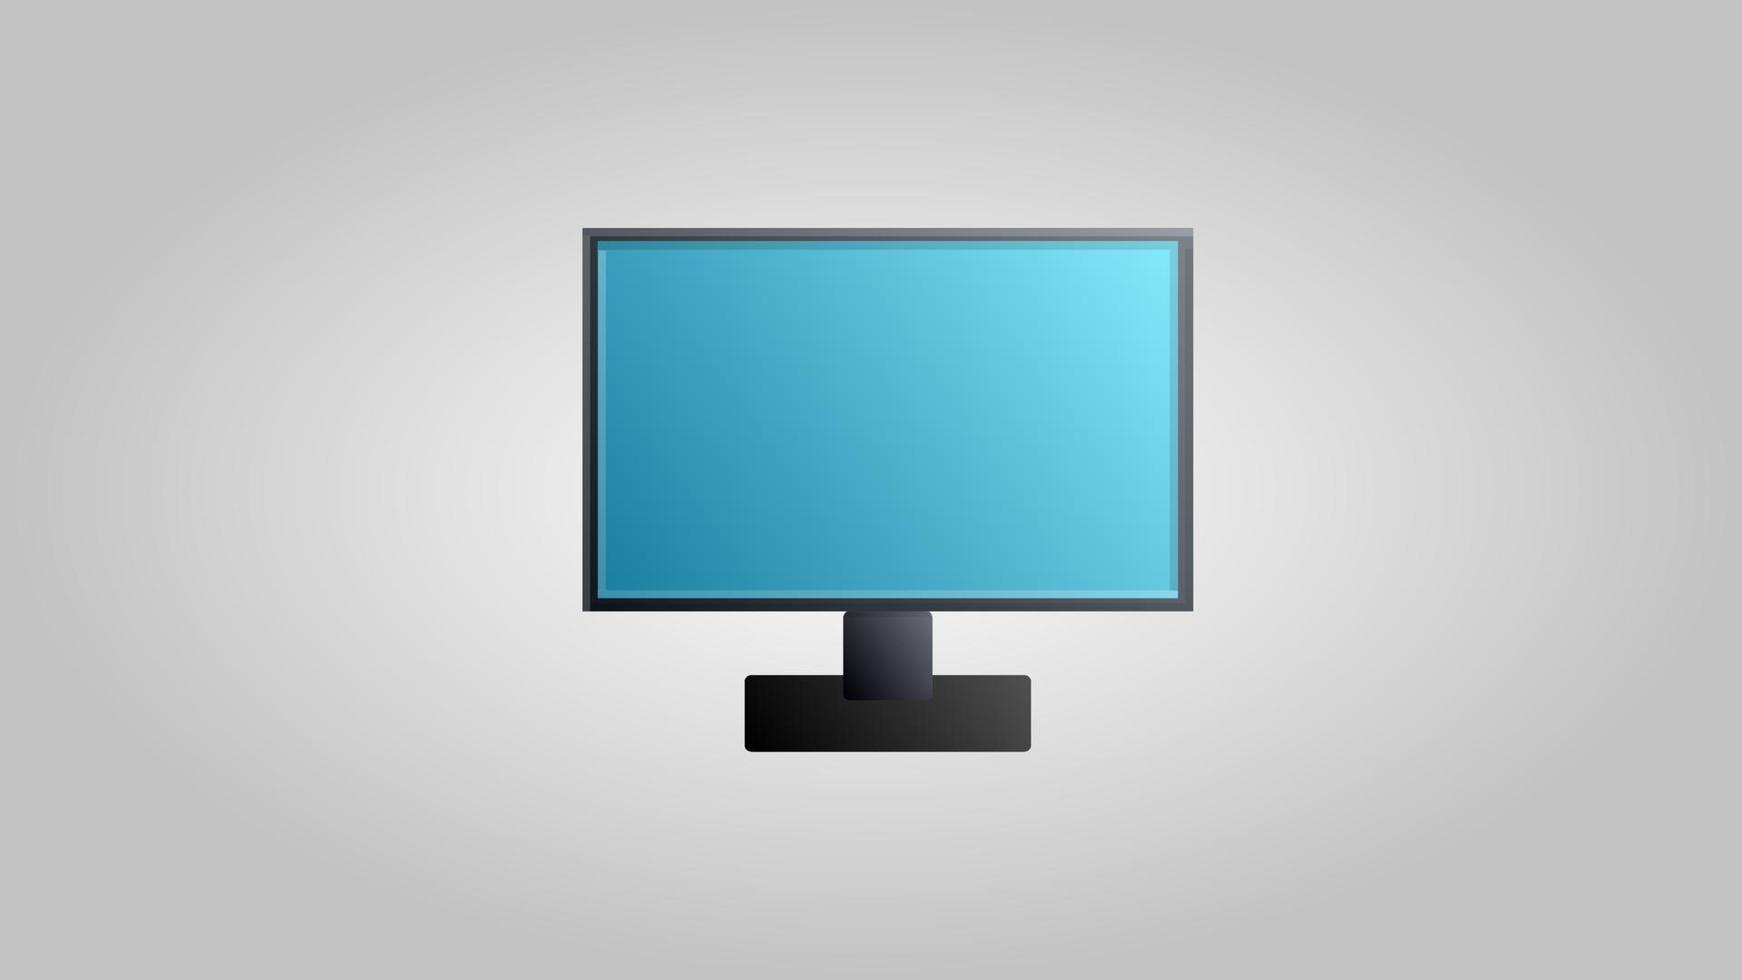 modern digital ny flytande kristall platt panel dator övervaka för spel, arbete och underhållning på en vit bakgrund. vektor illustration